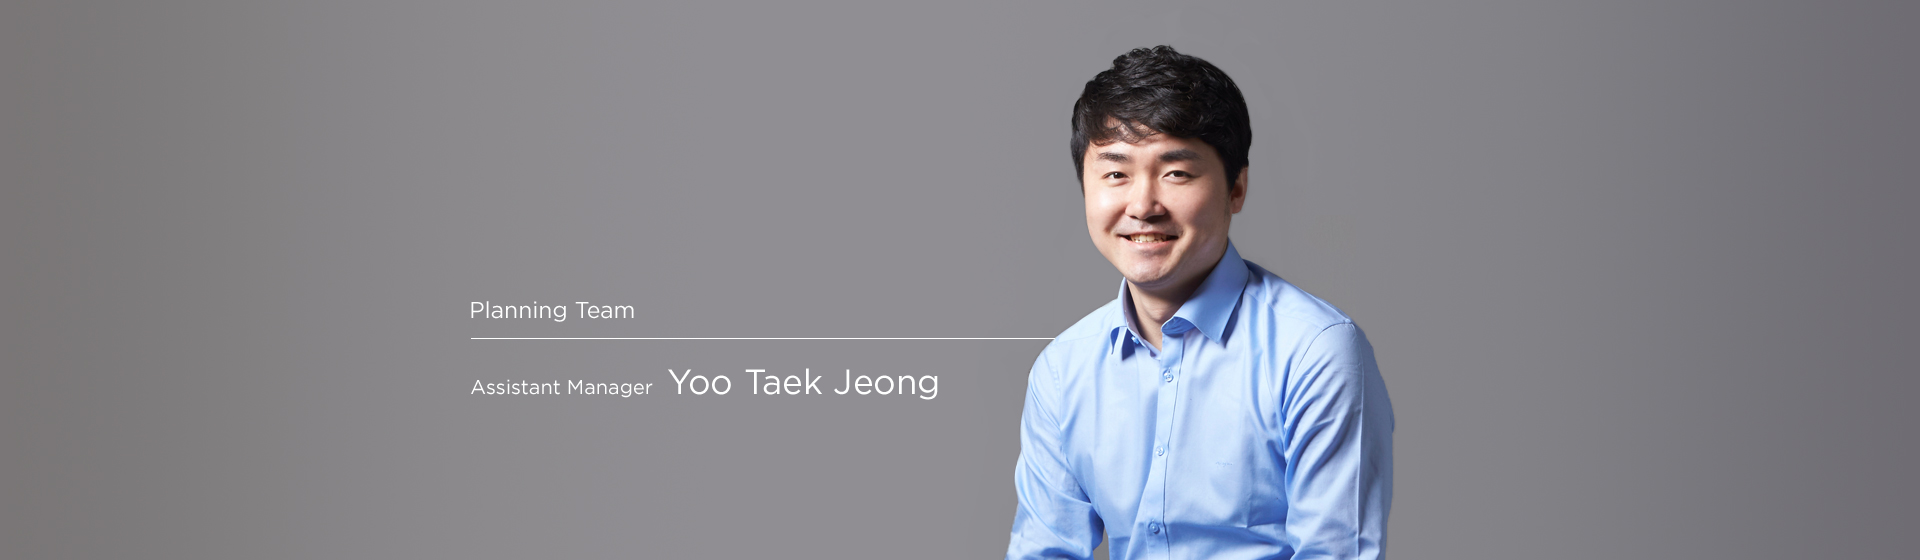 Planning - Taekjung Yoo 